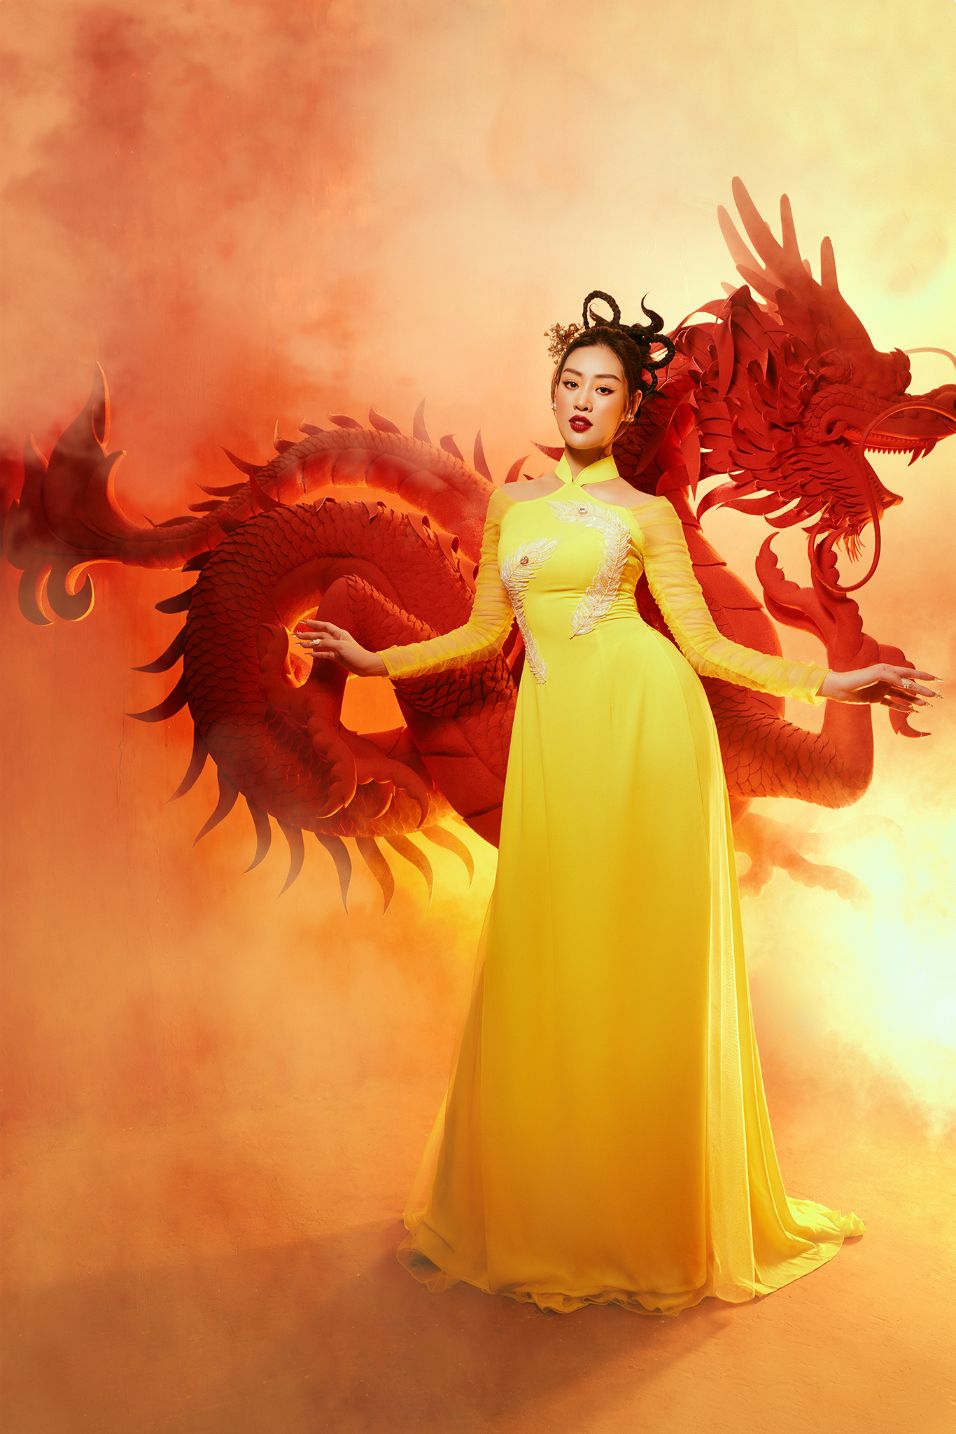 Hoa hau Khanh Van 1 Hoa hậu Khánh Vân: Chuyện cũ gác lại, hướng đến những tương lai tươi sáng hơn